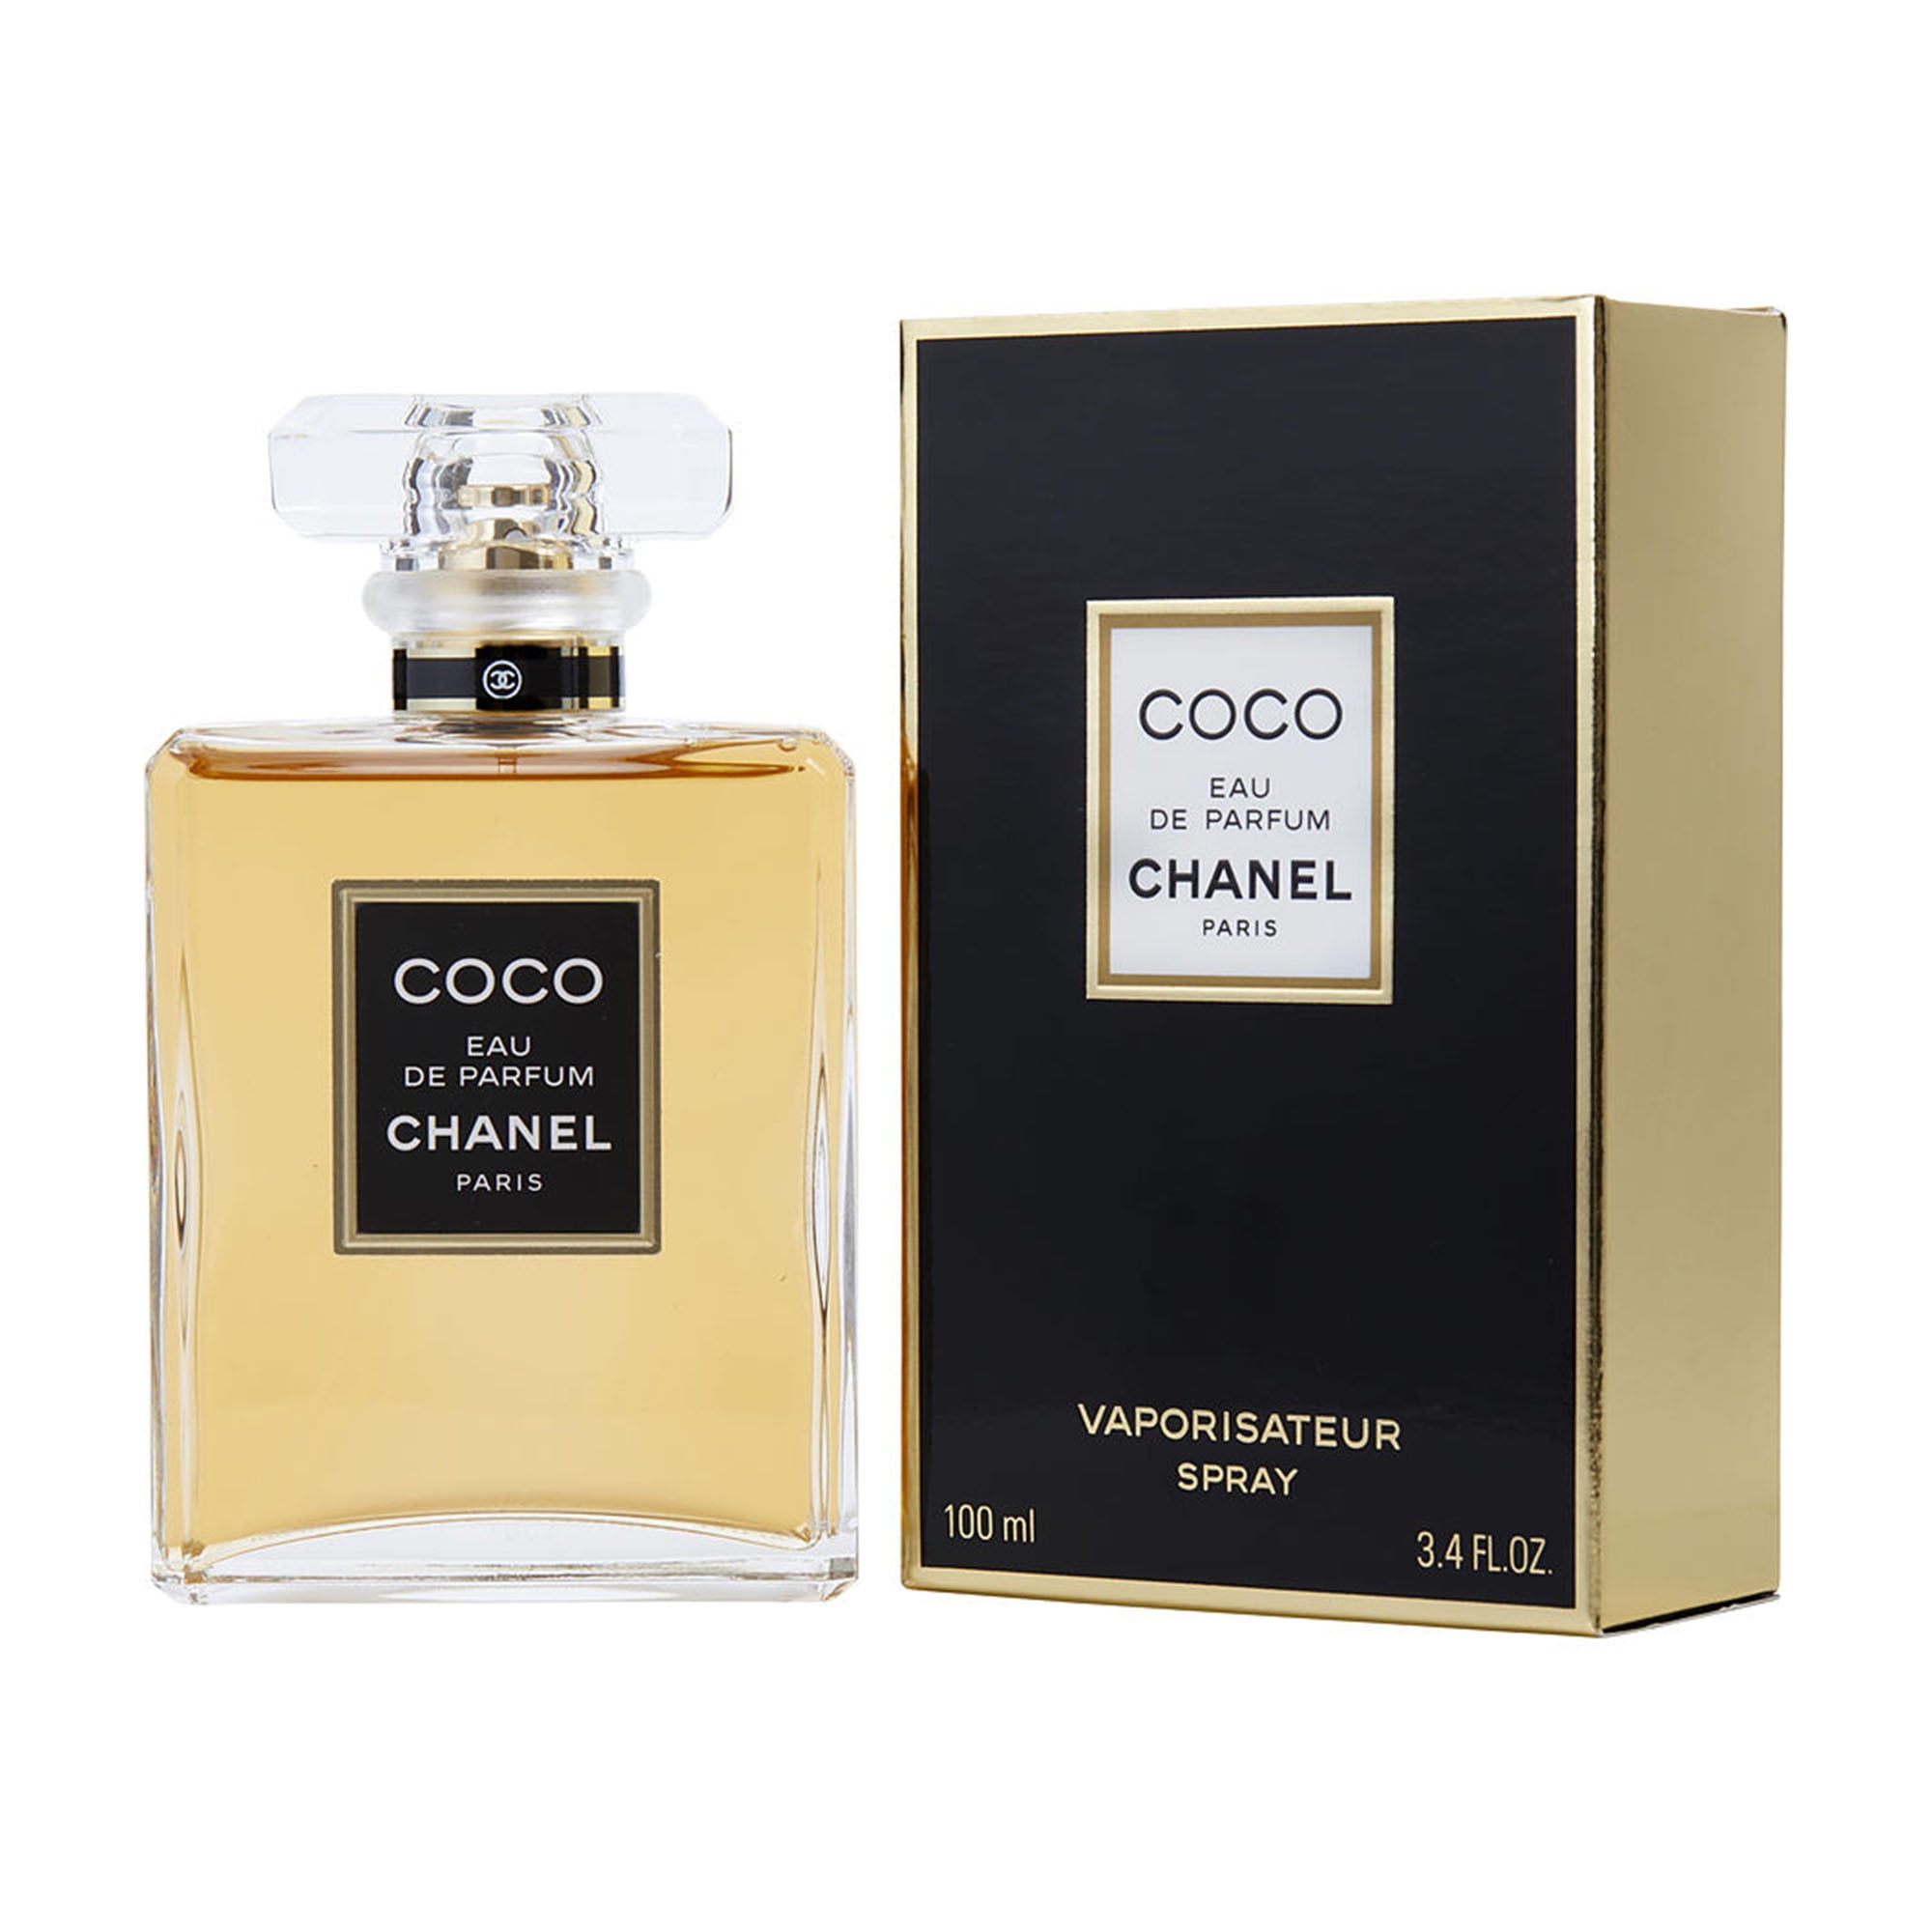 Coco (Vintage) by Chanel for Women 1.2 oz Eau de Parfum Spray